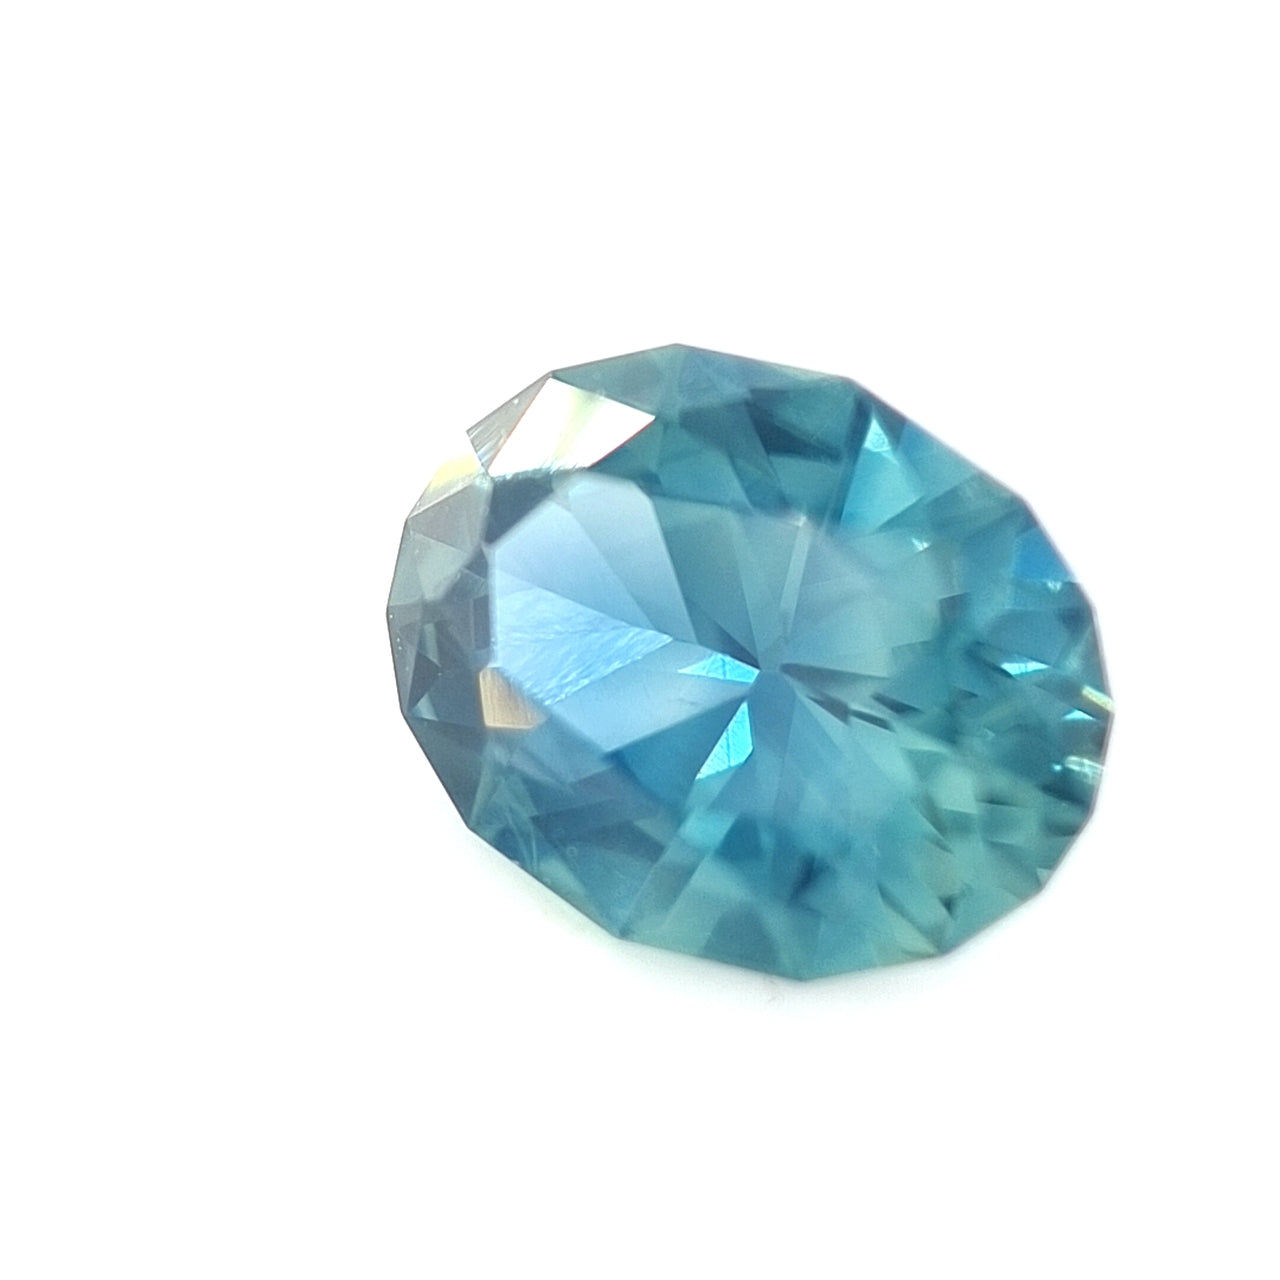 1.45ct Nigerian Sapphire, Teal-Aqua Blue - Oval